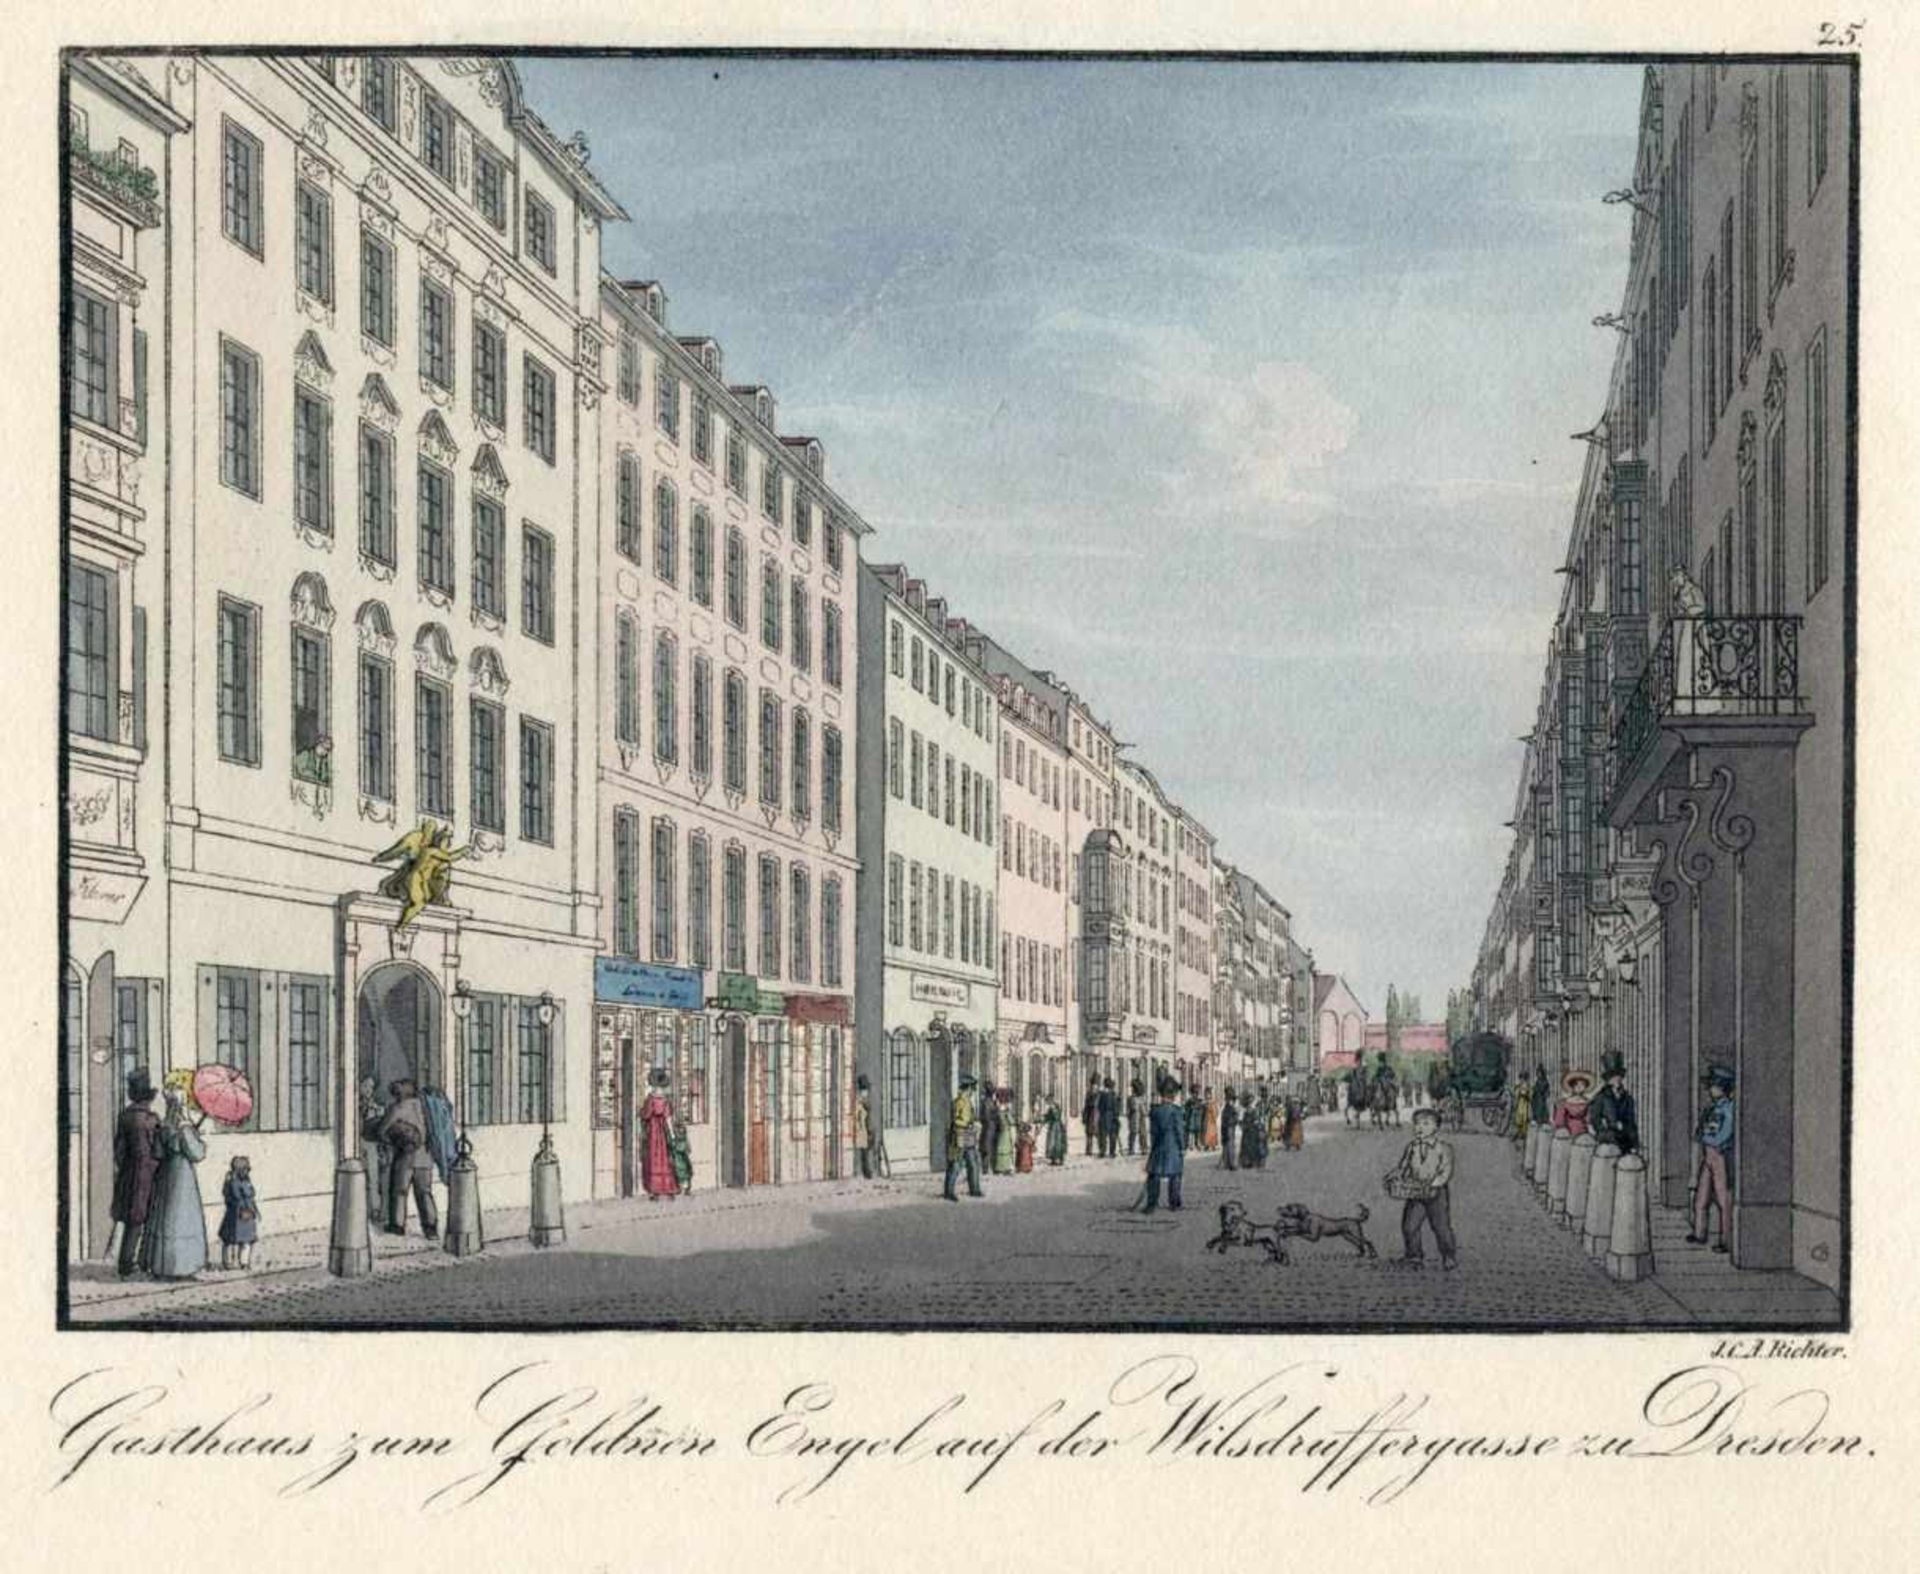 Johann Carl August Richter "Gasthaus zum Goldenen Engel auf der Wilsdruffergasse zu Dresden". Um